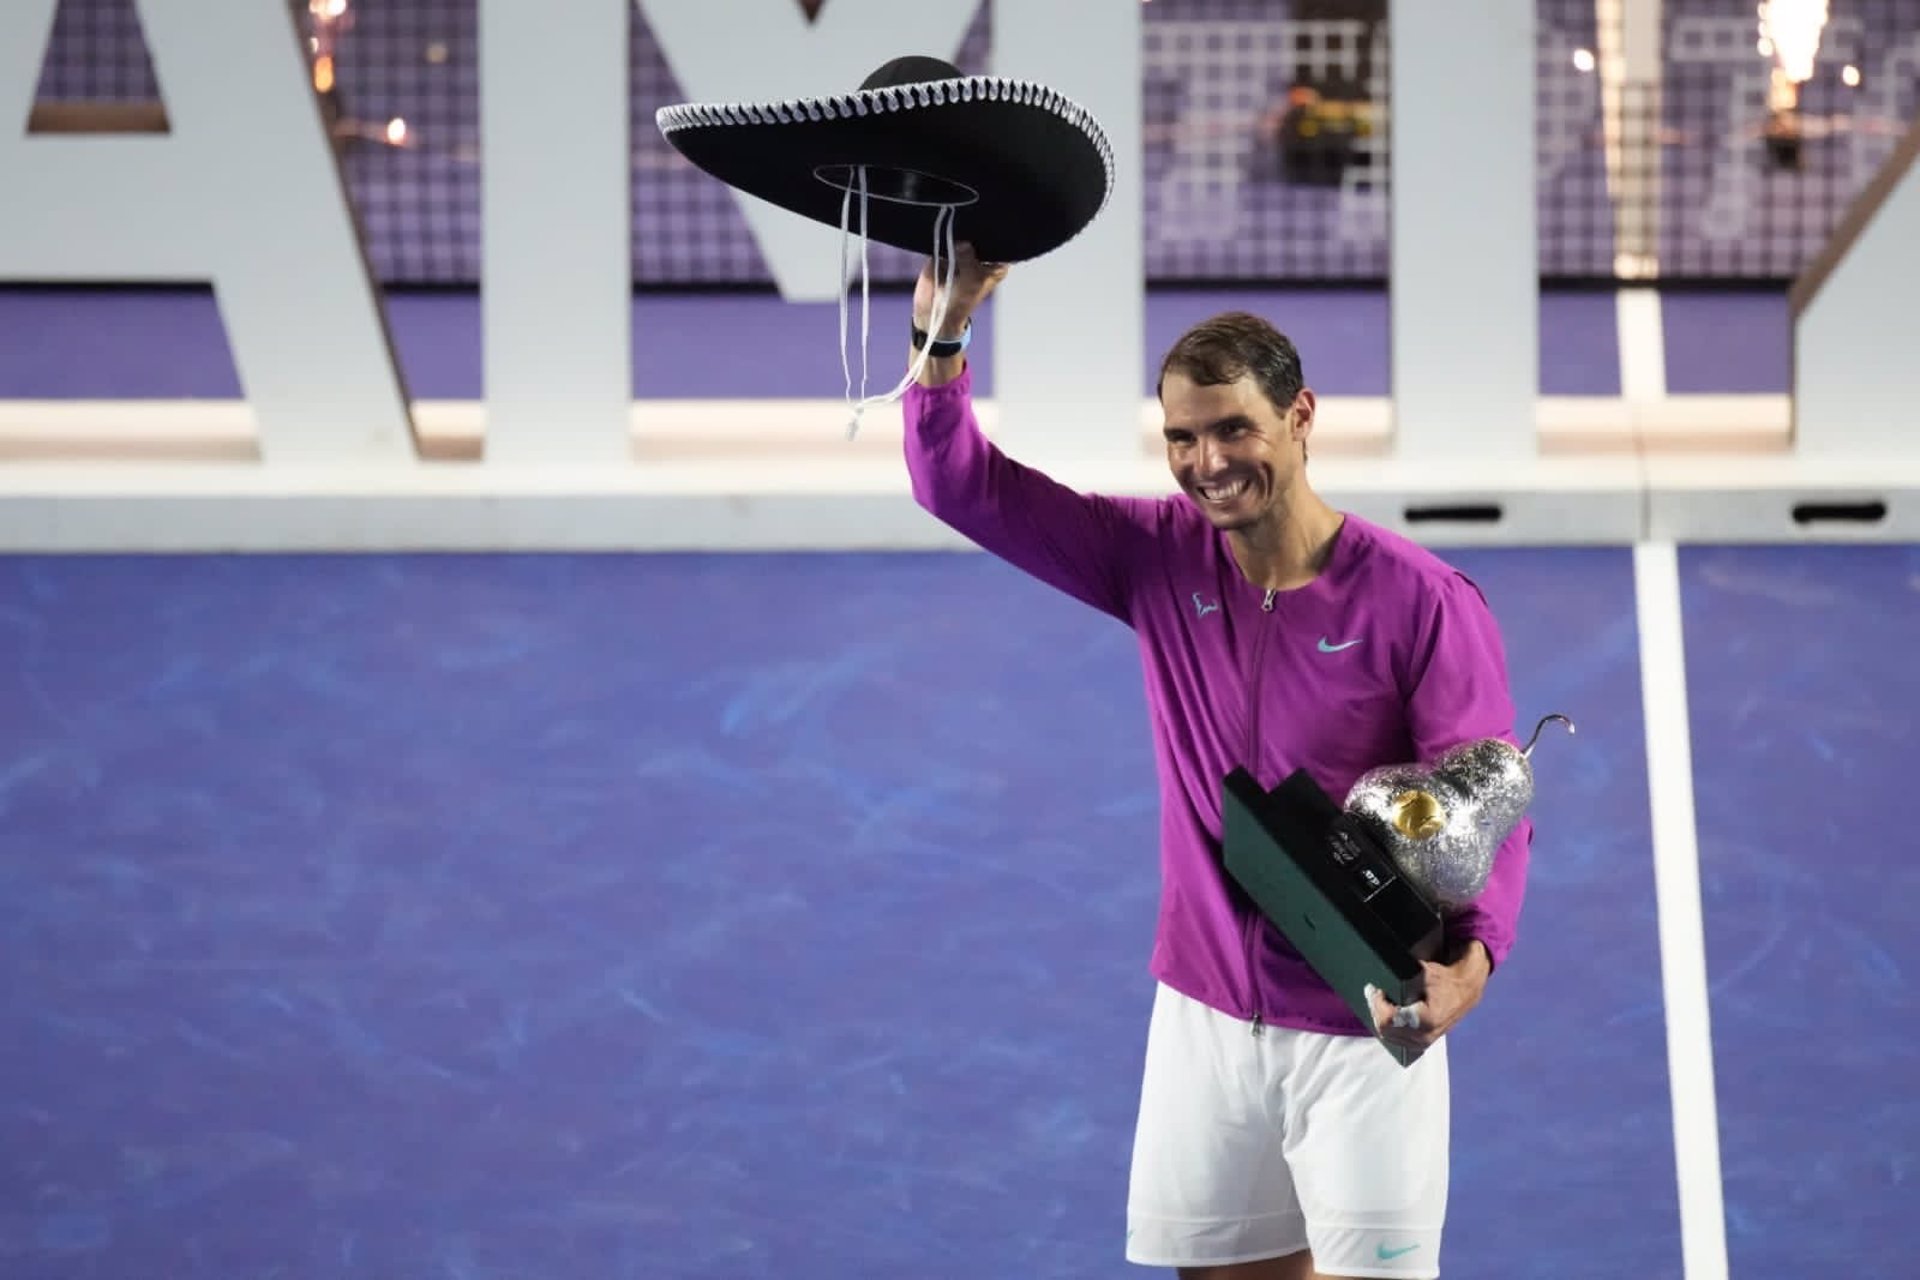 Rafa Nadal reconquista Acapulco y suma su título número 91